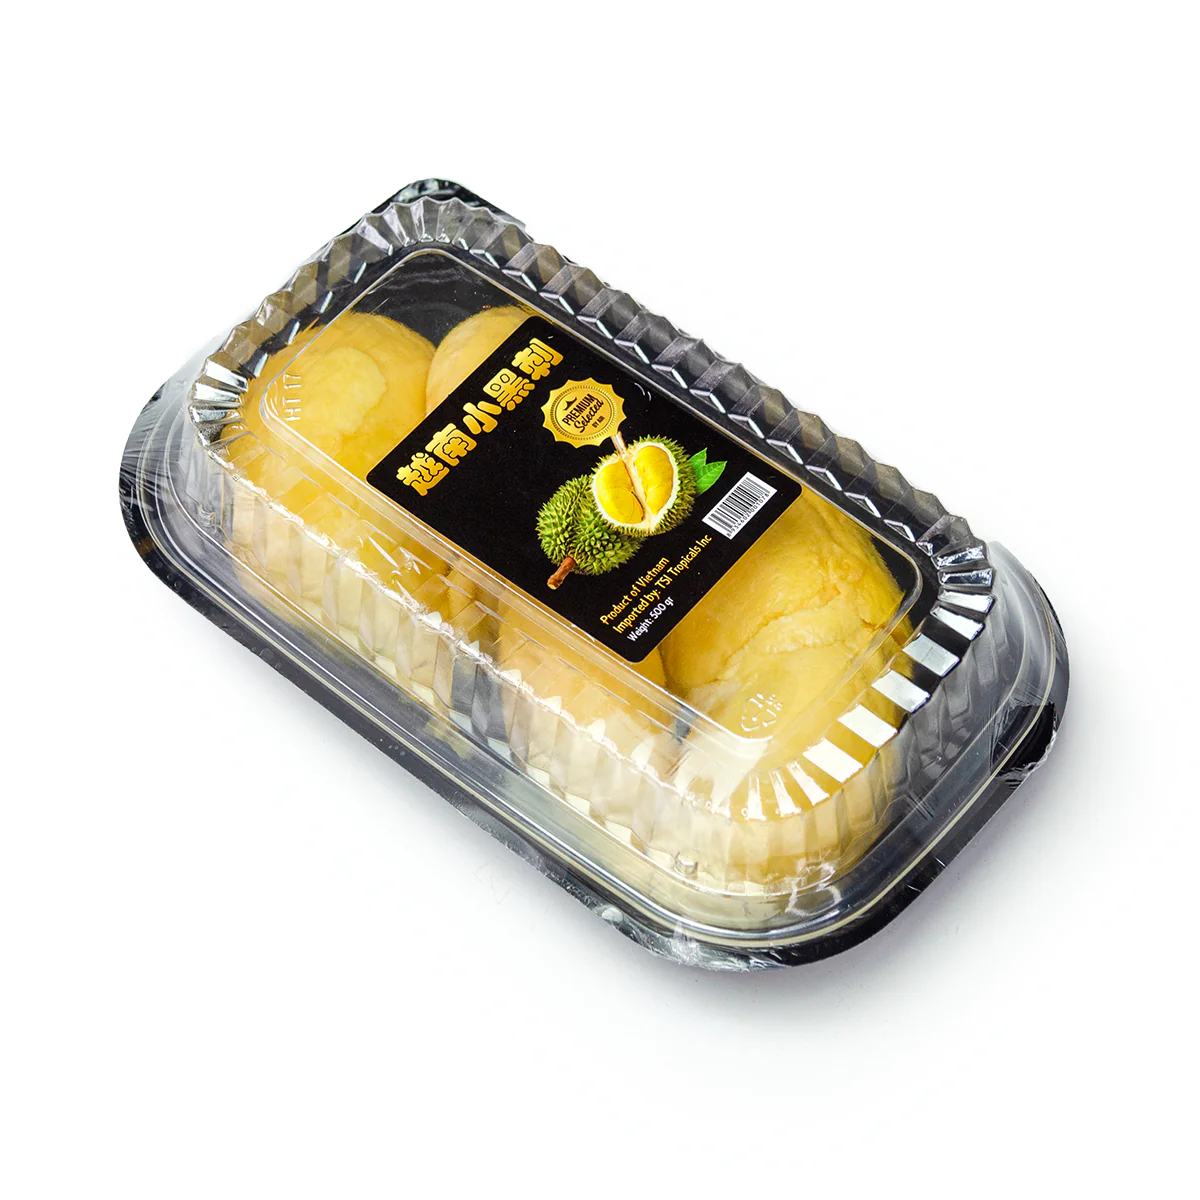 Peeled RI-6 Durian By Air (500g)